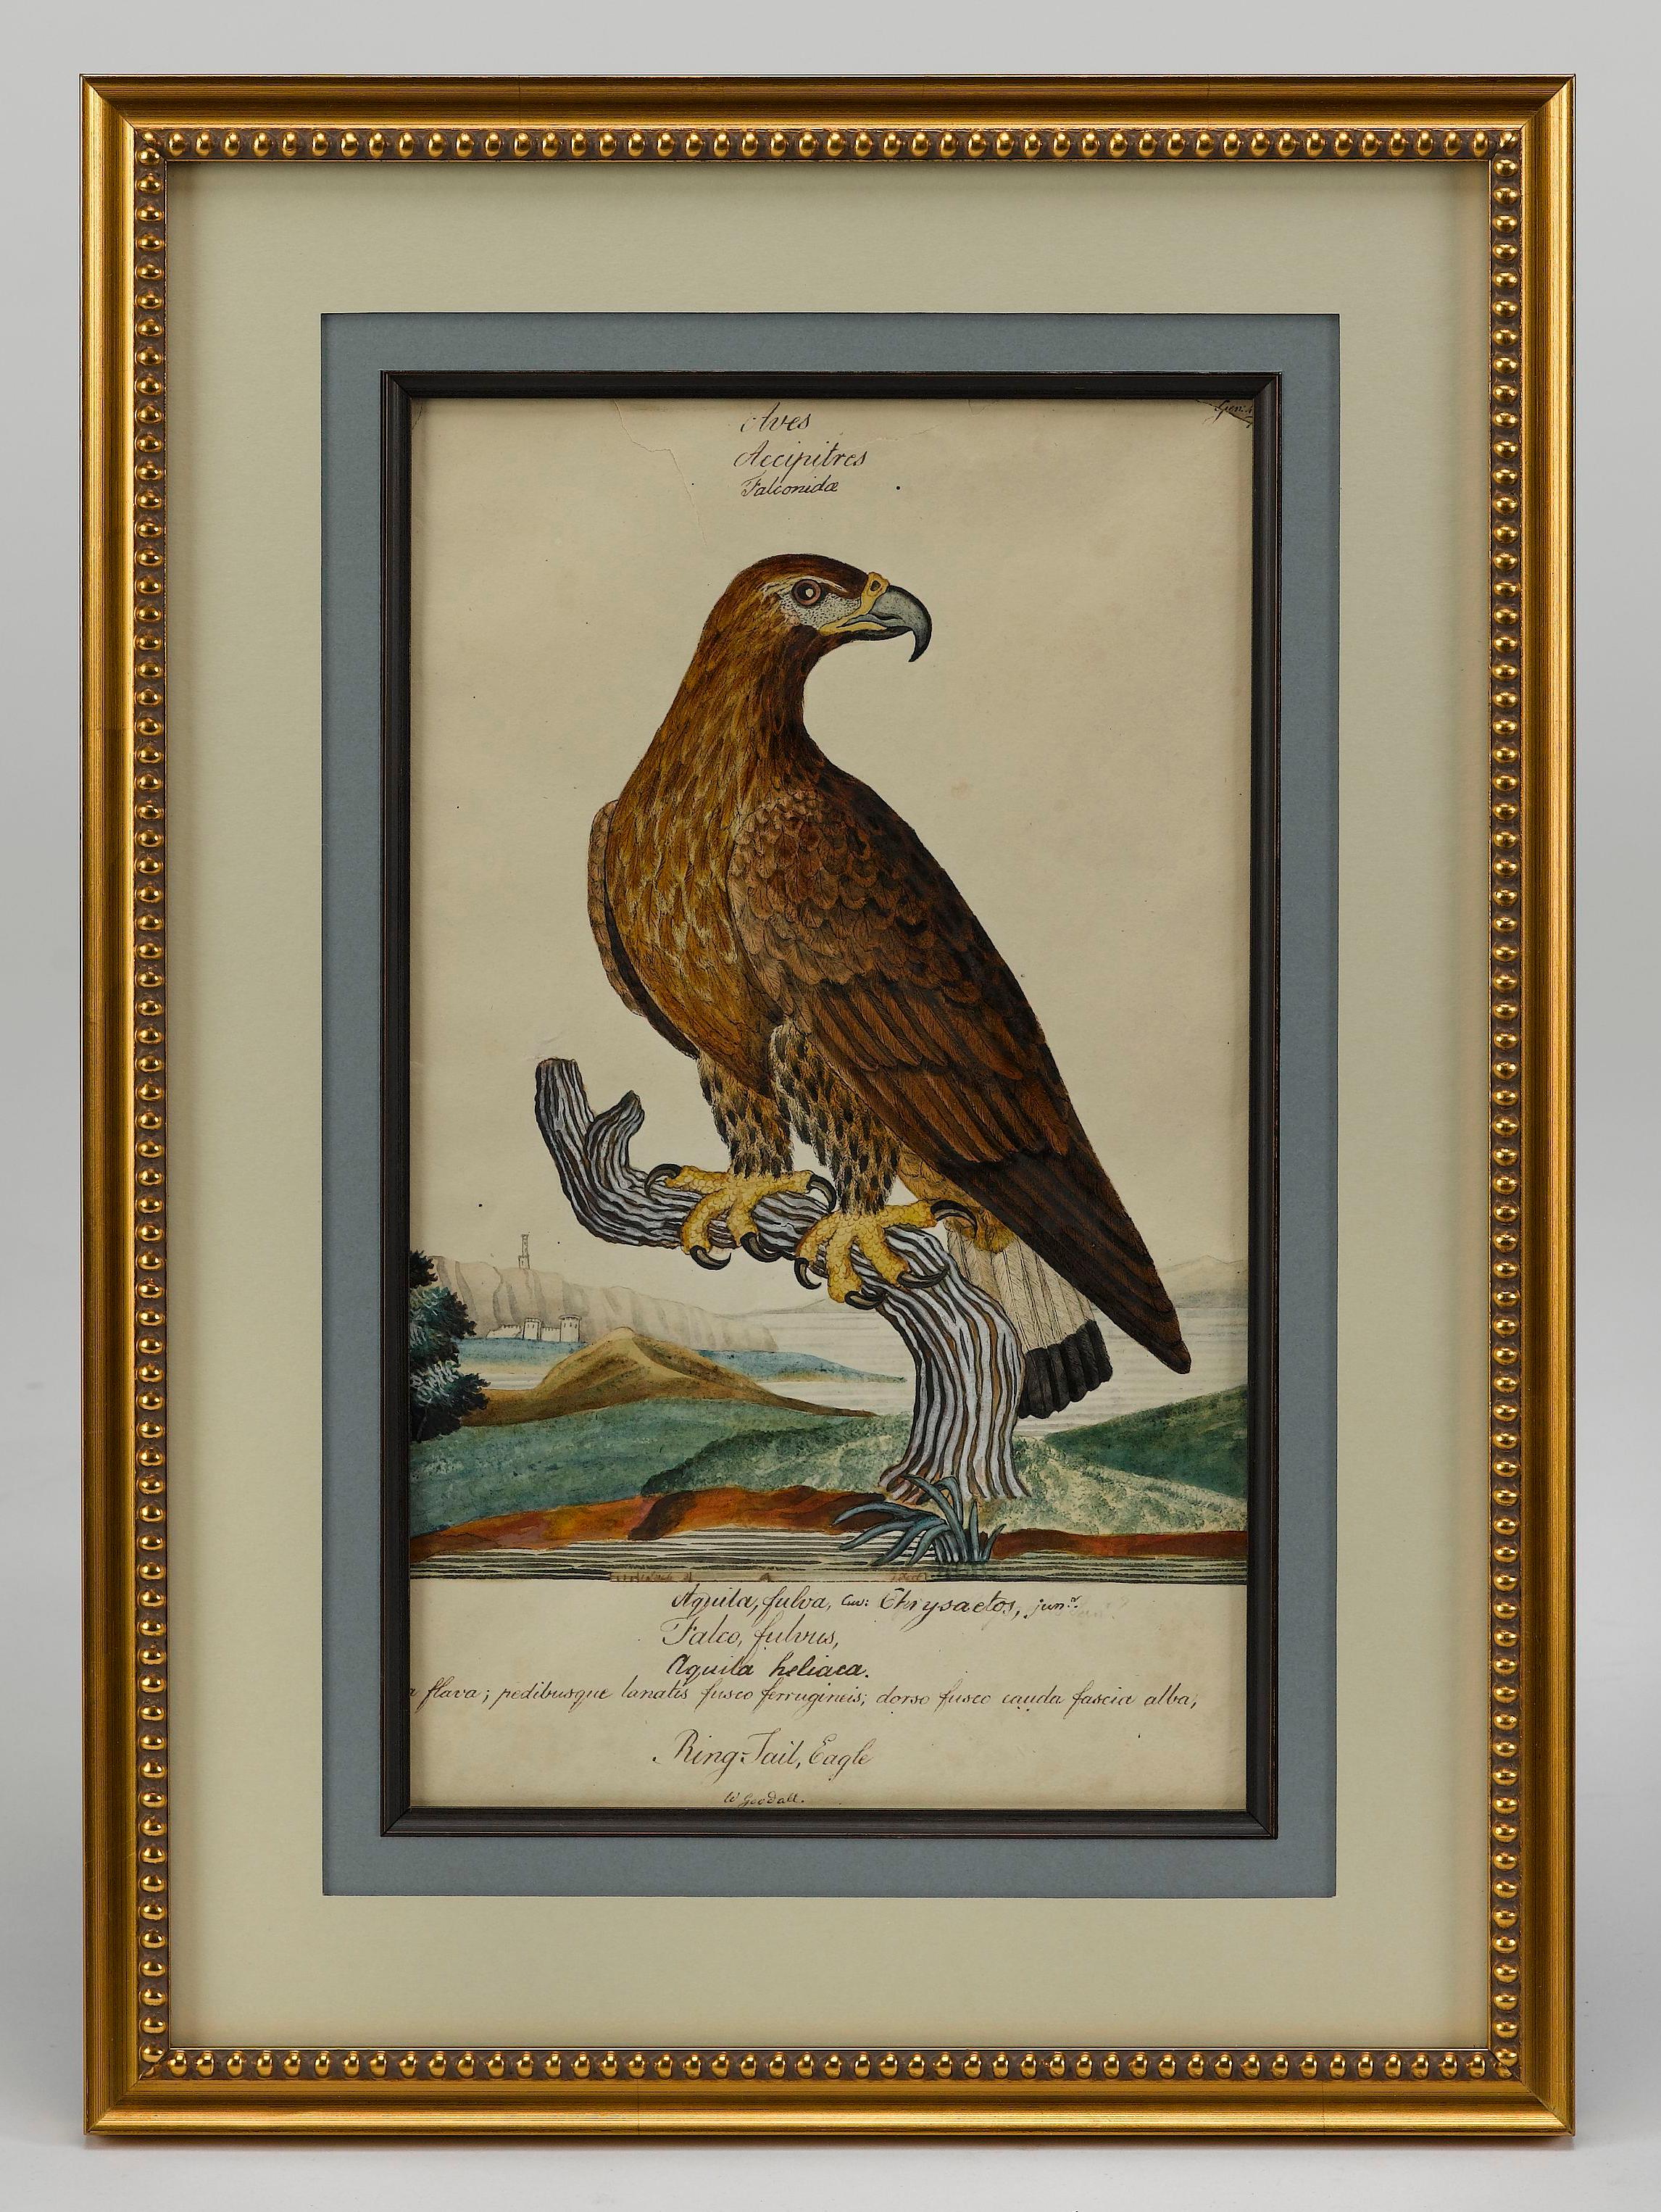 Es handelt sich um ein beeindruckendes Originalgemälde eines Ringschwanzadlers des britischen Naturhistorikers William Goodall. Eine schöne und farbenfrohe Kombination aus Aquarell und Tusche, die in einem detaillierten, fertigen Stil wiedergegeben